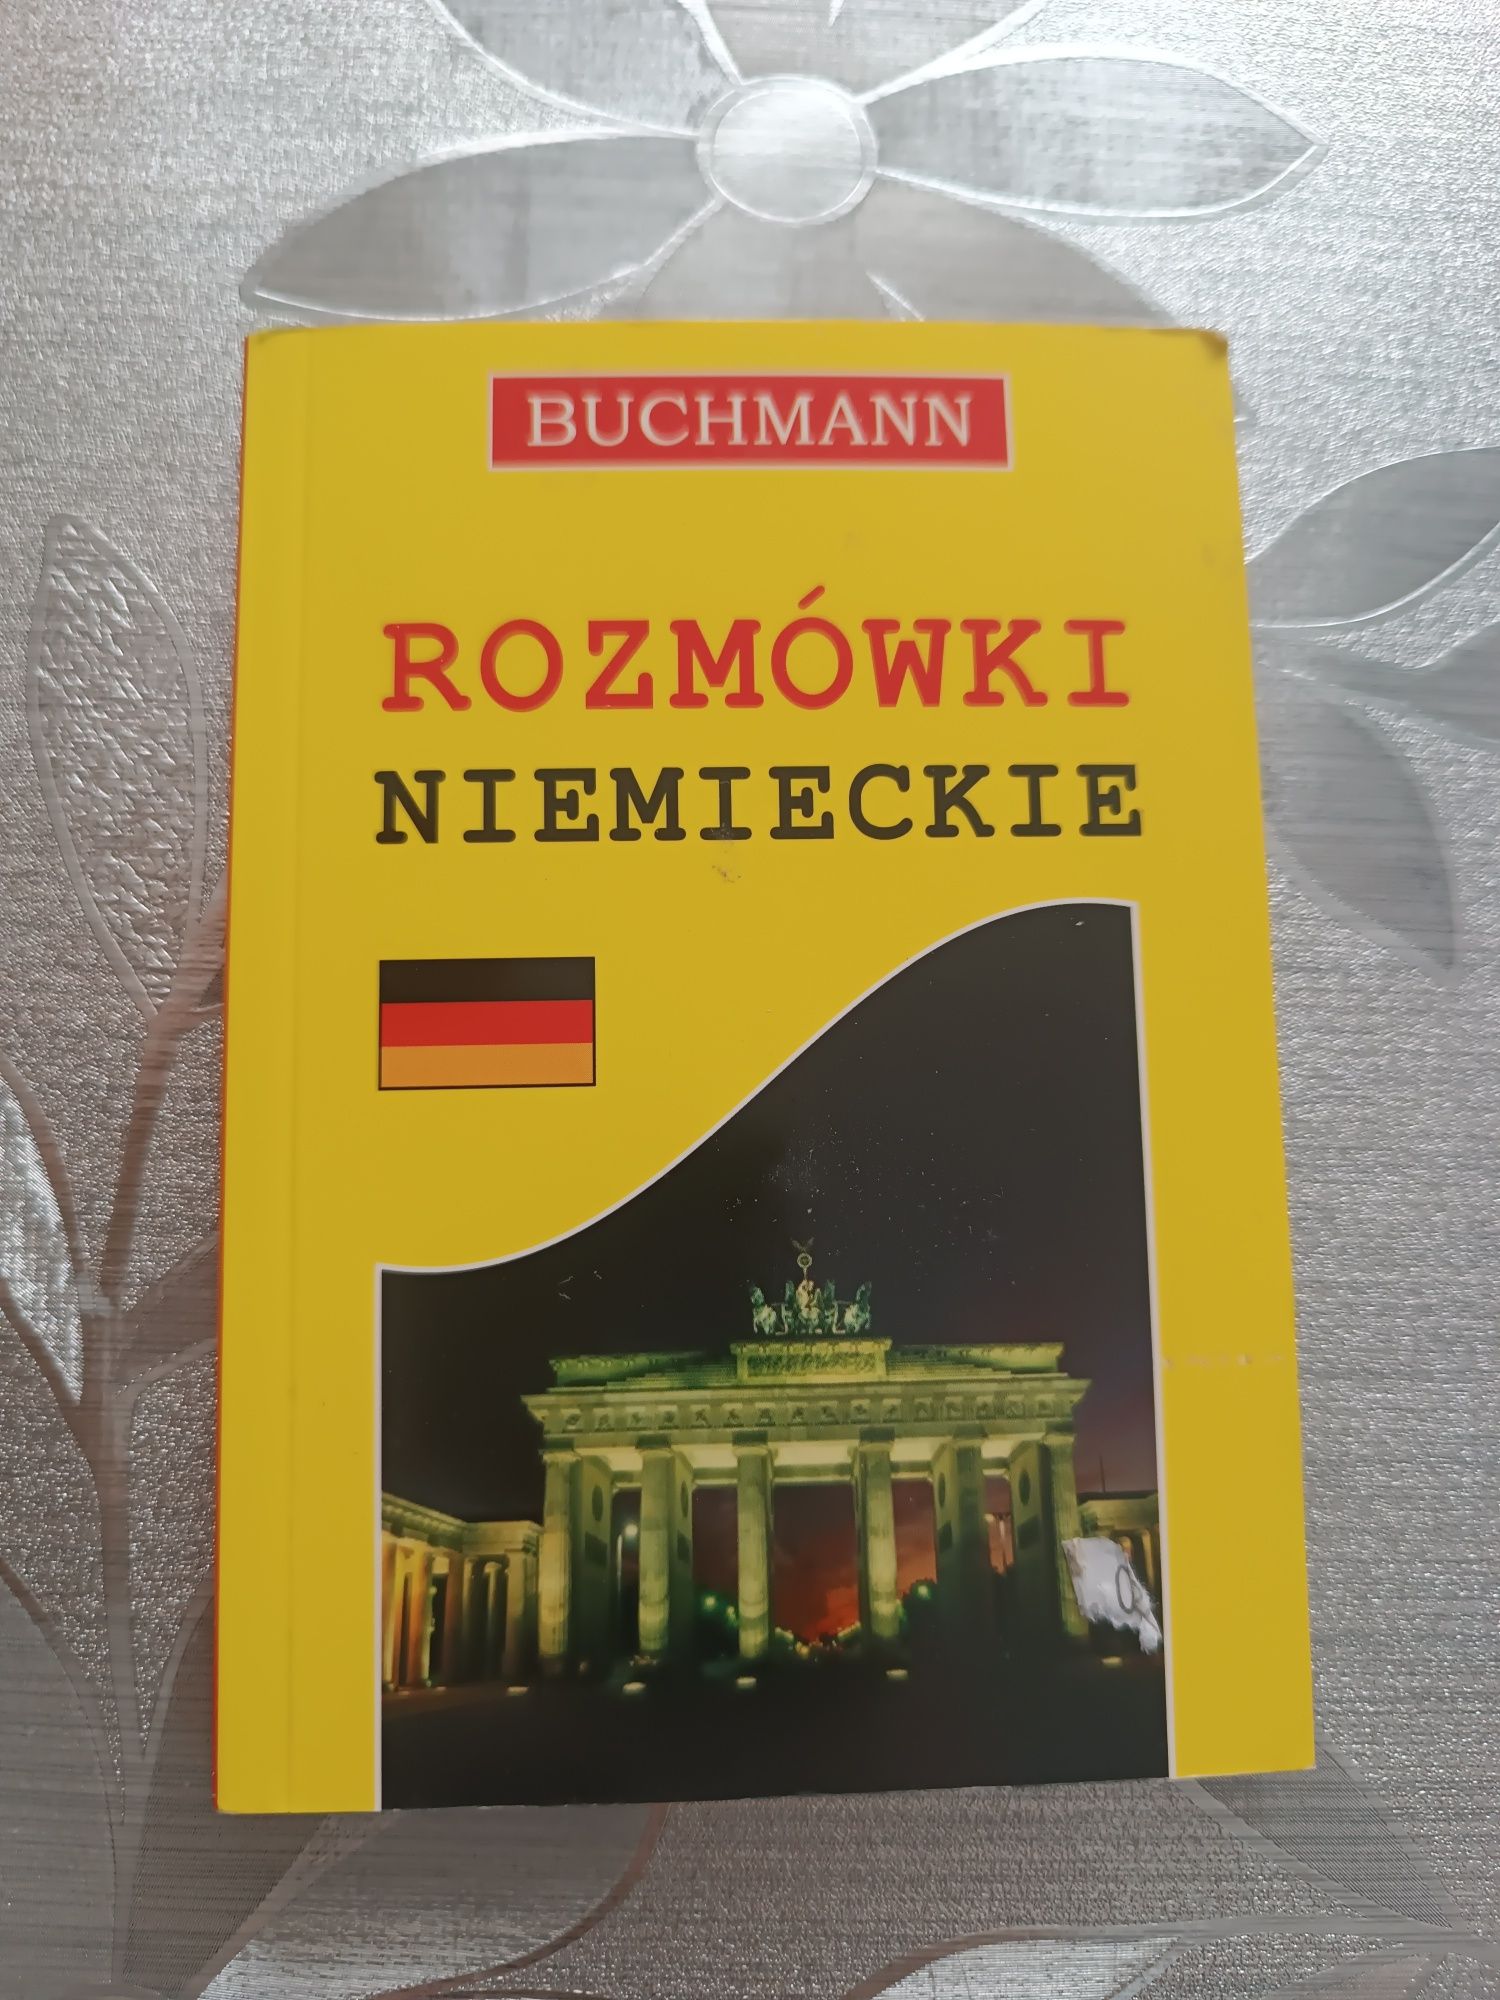 Rozmówki niemieckie buchmann